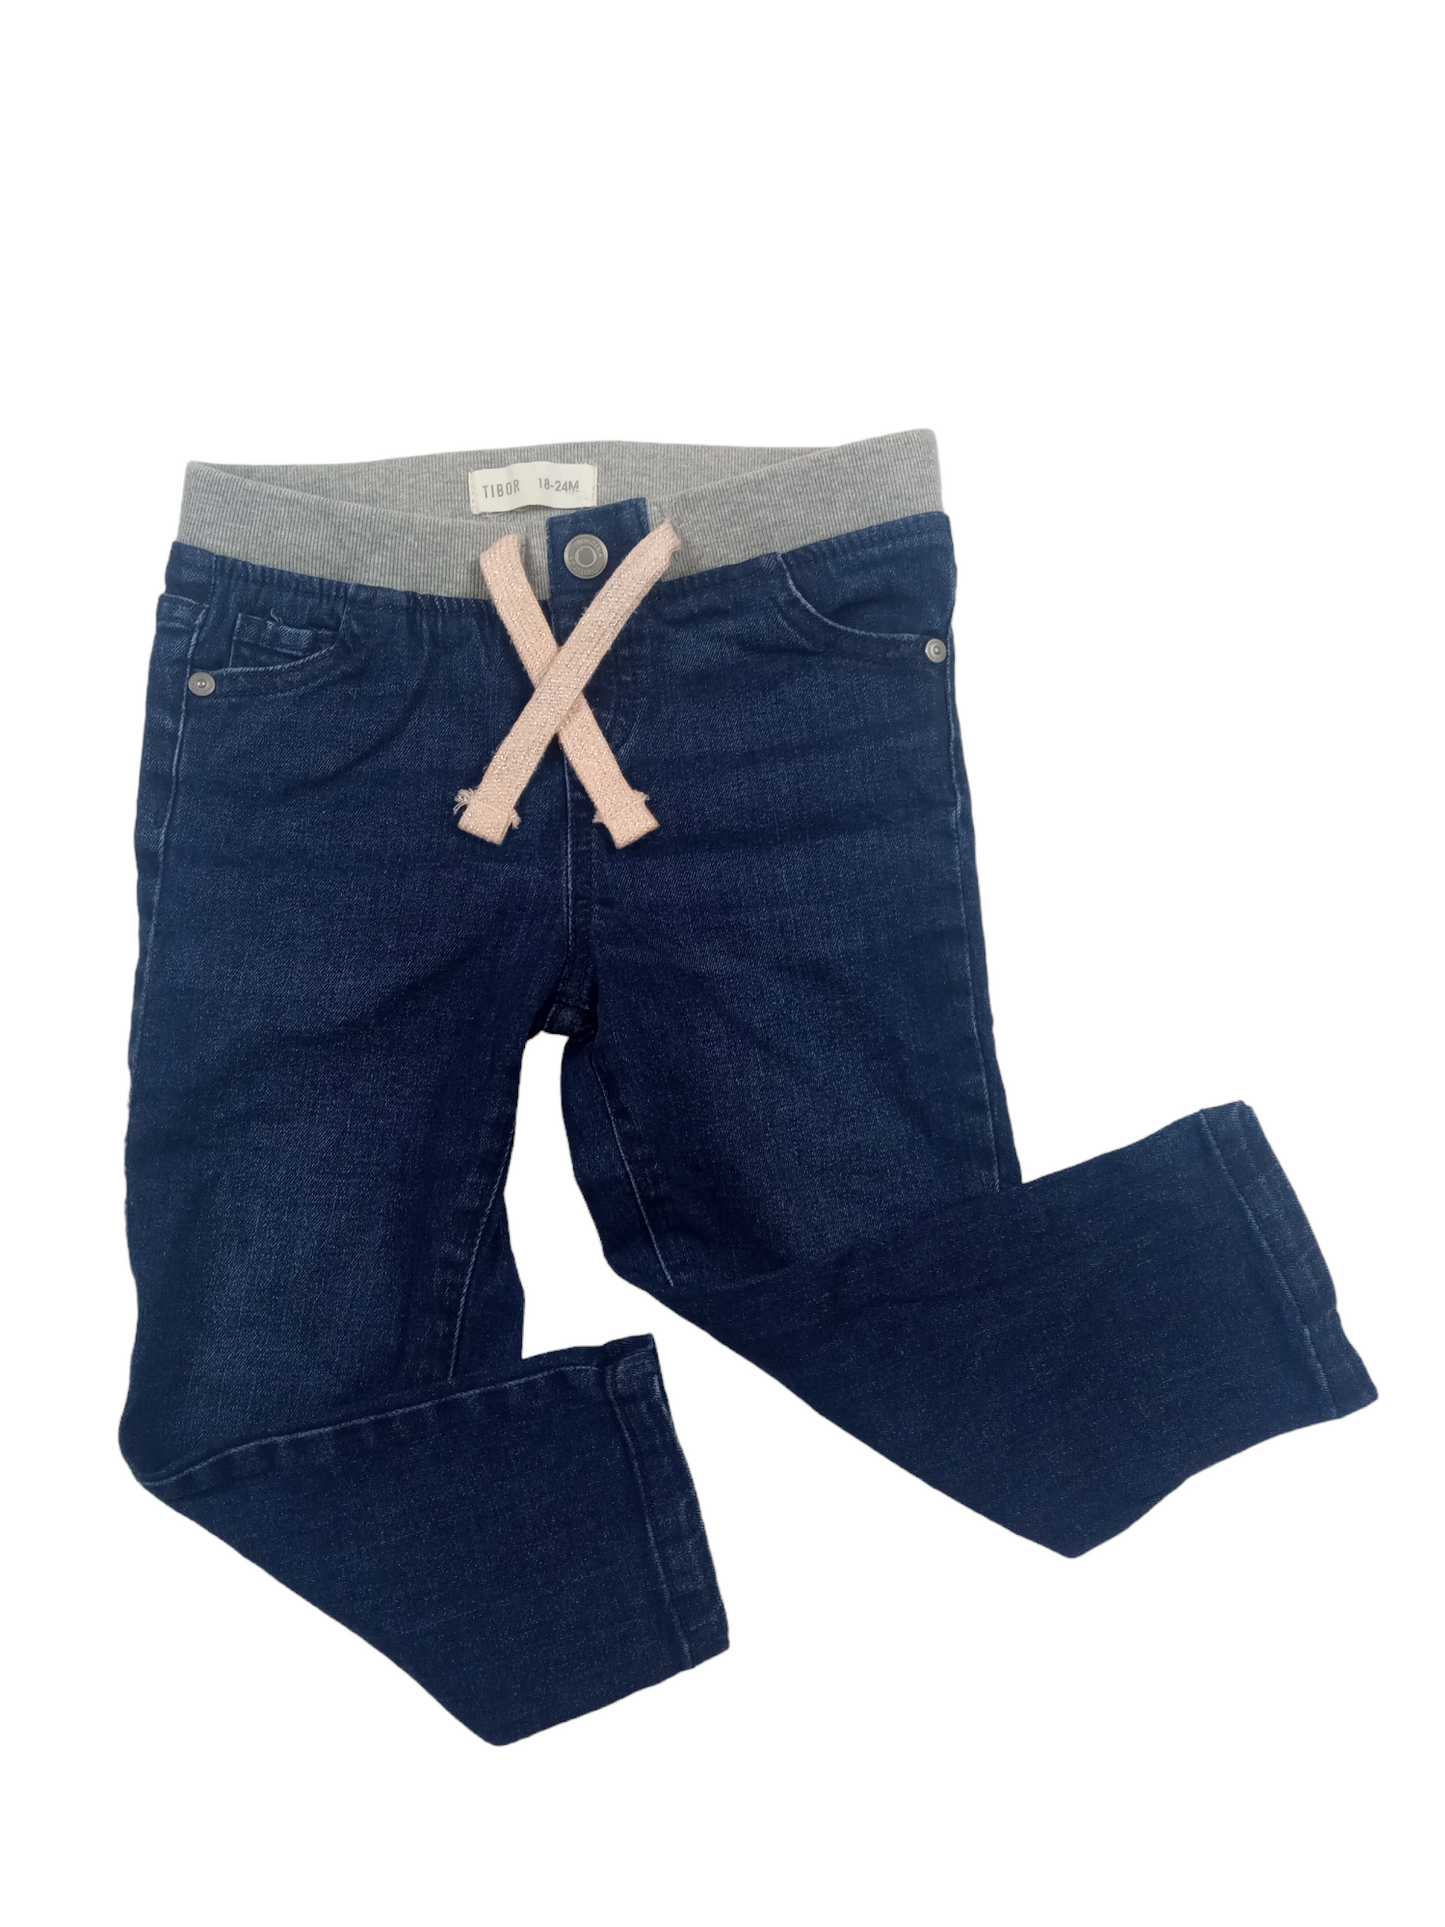 Pantalón jeans / 18-24 meses